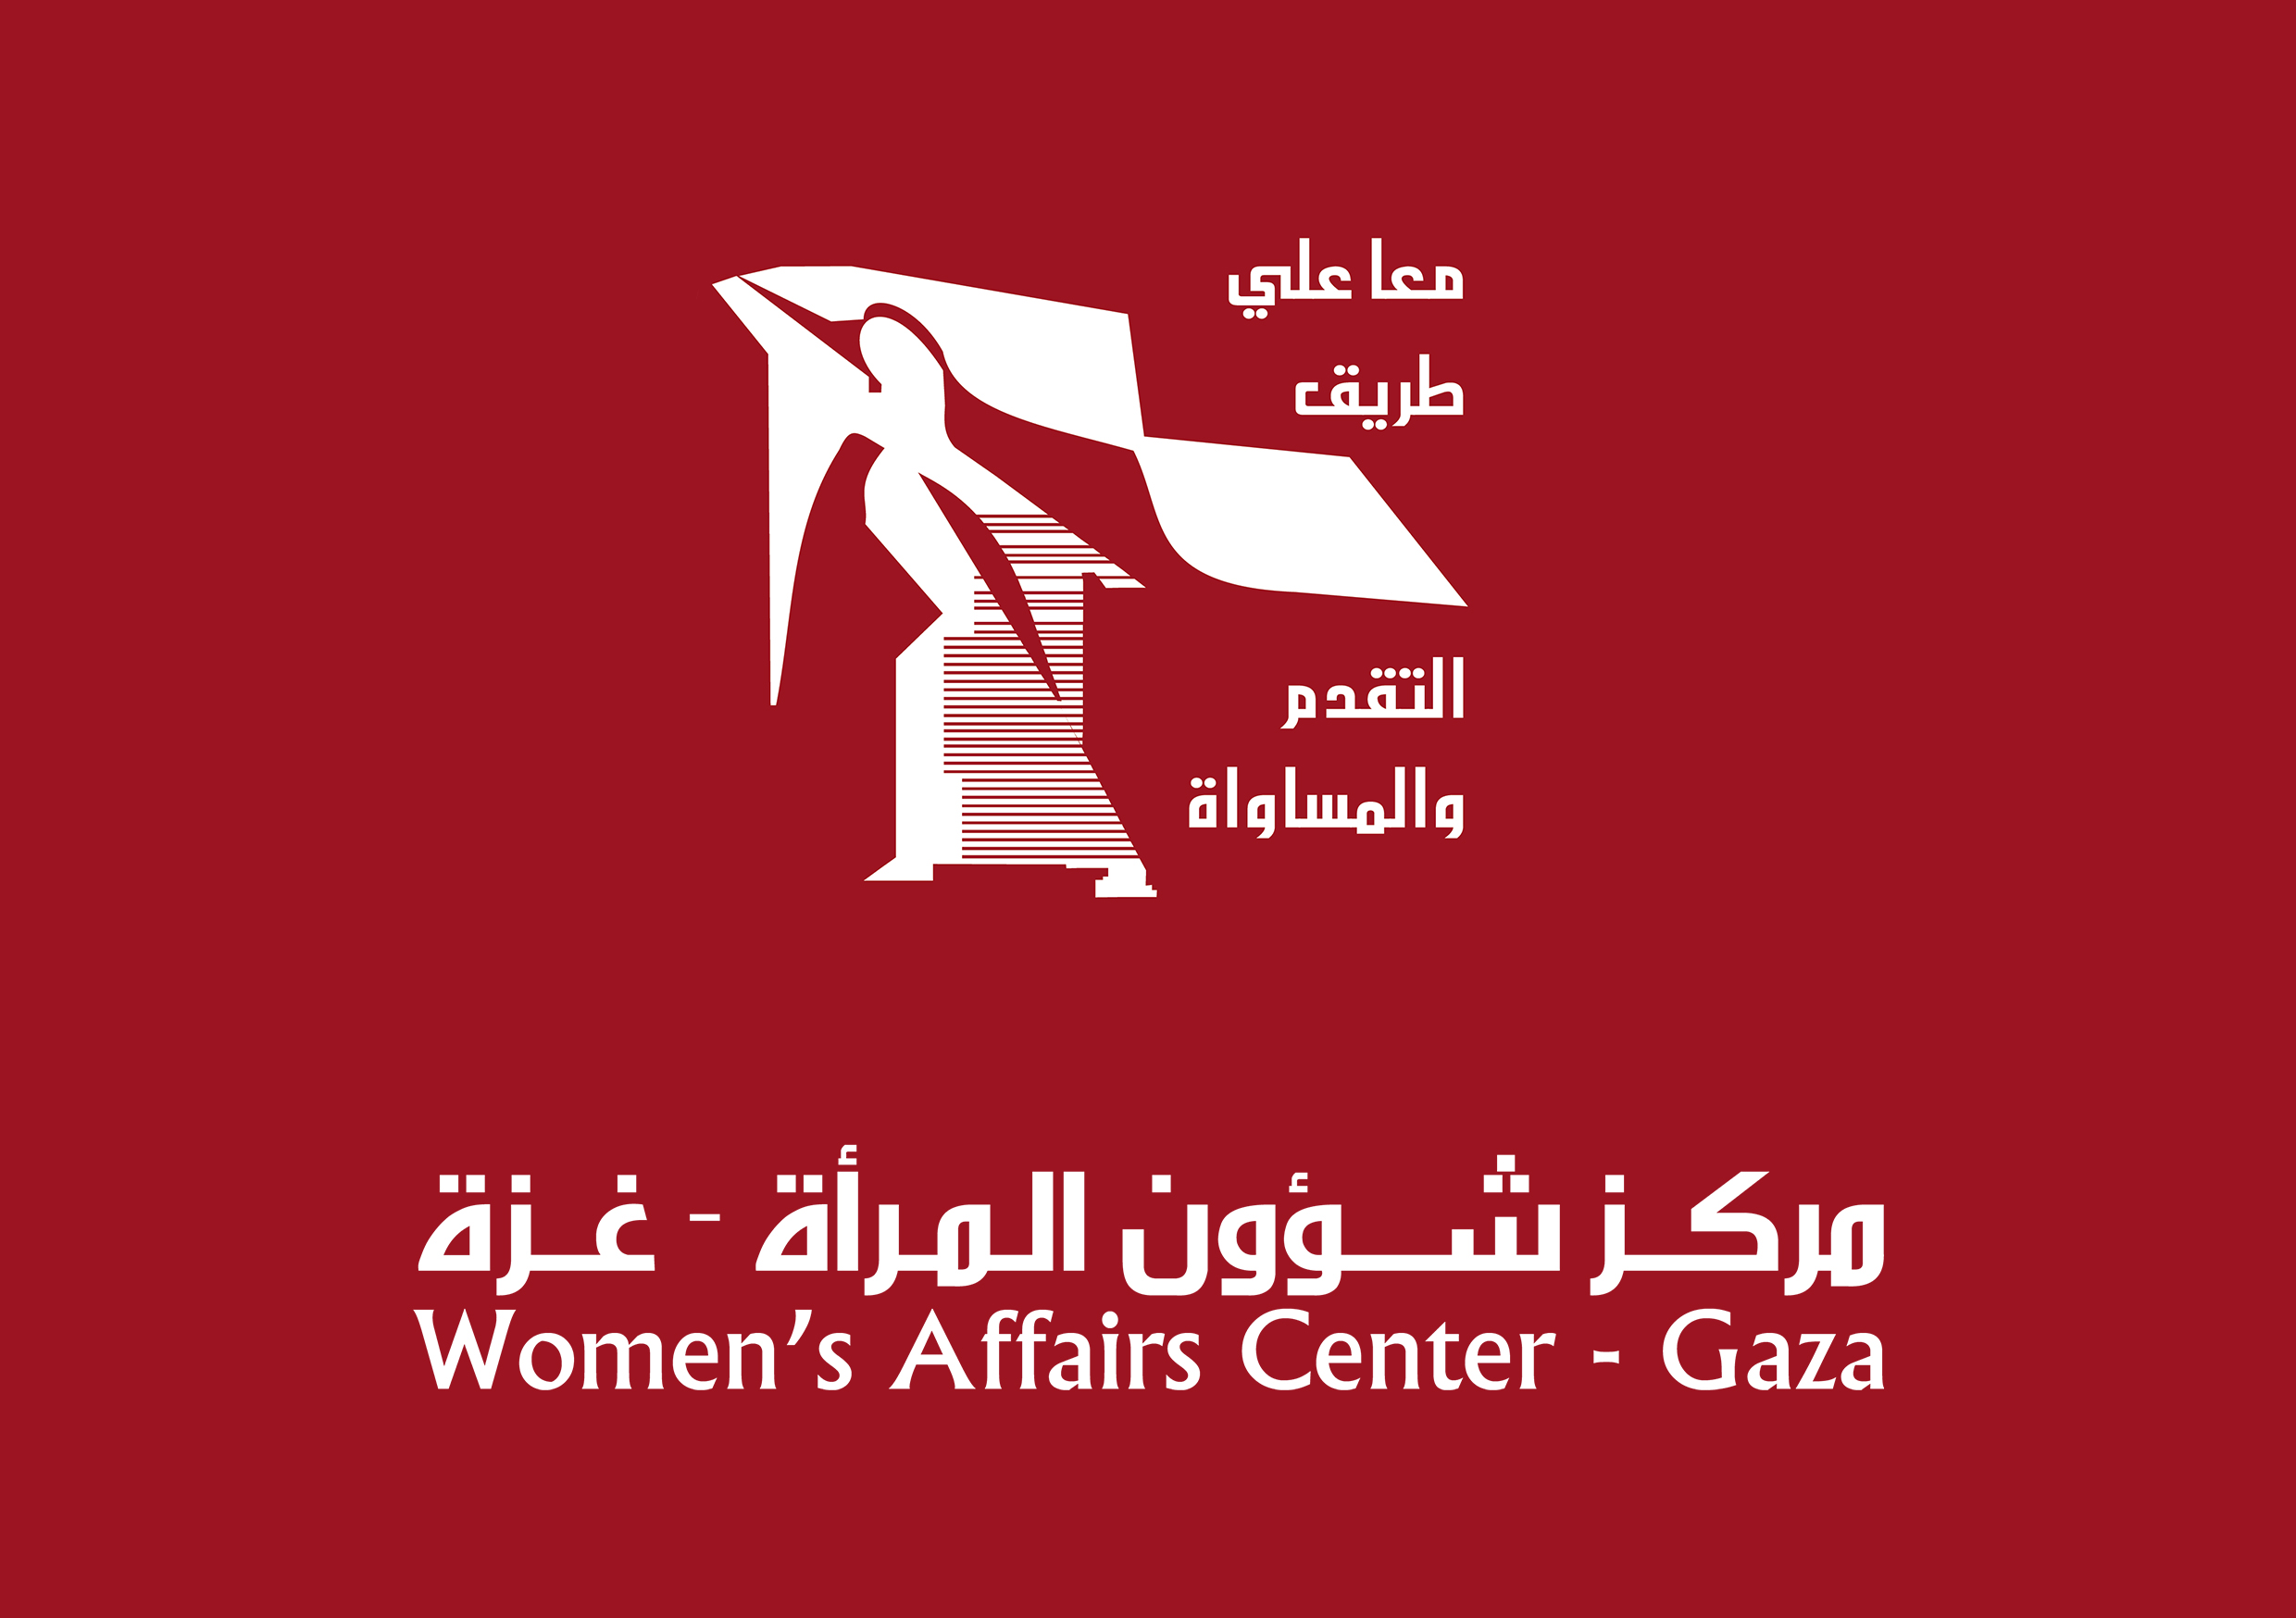 مركز شؤون المرأة يستنكر تصنيف المؤسسات الست بالإرهابية من قبل الاحتلال الإسرائيلي